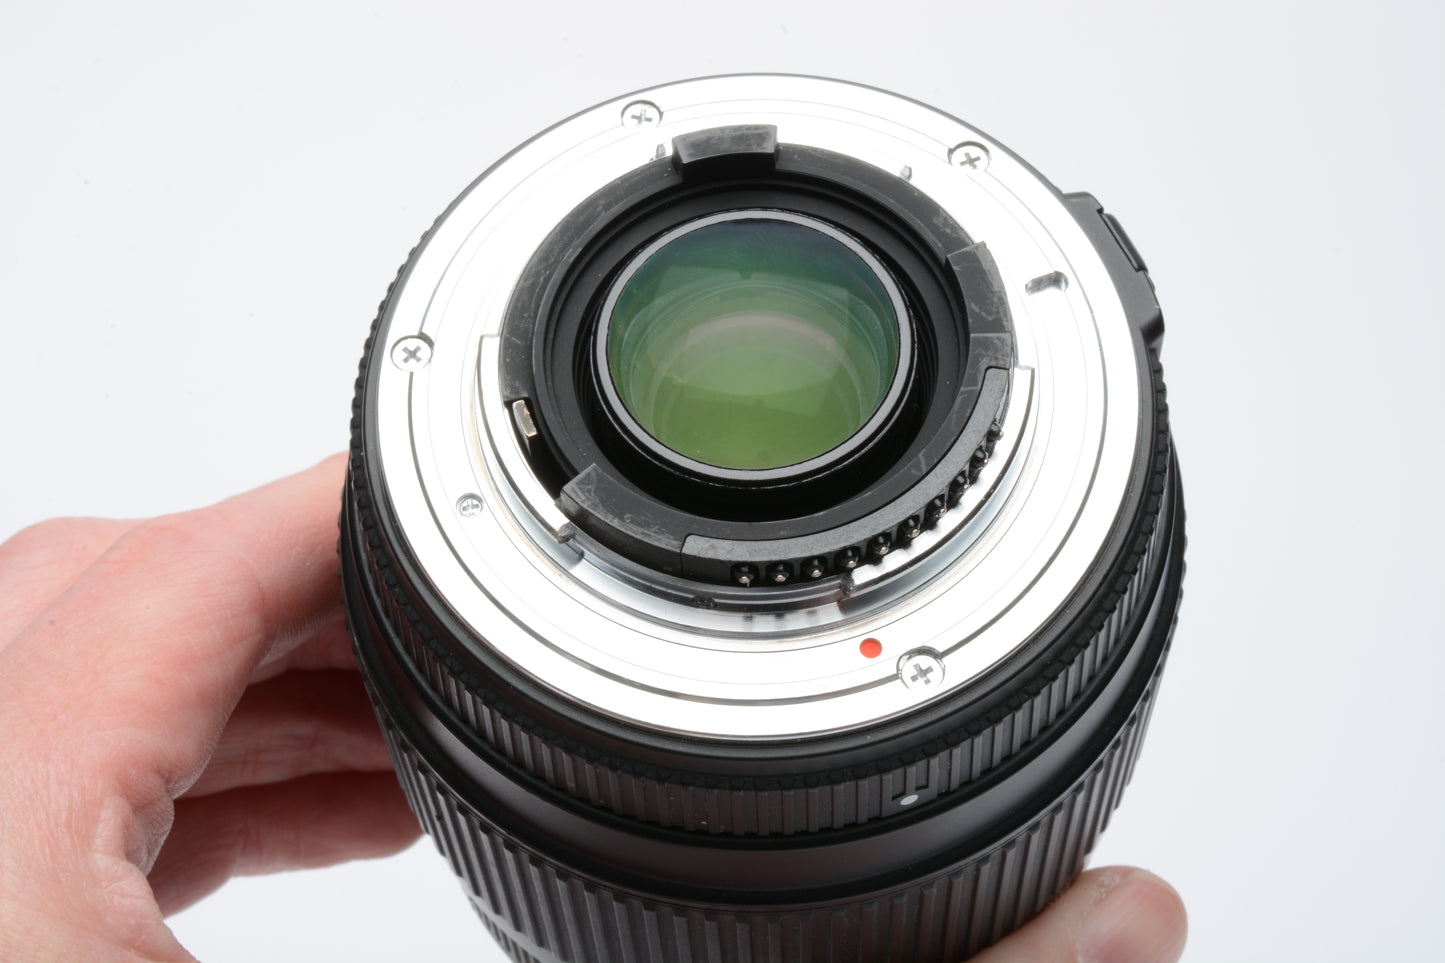 Sigma DG AF 70-300mm f4-5.6 Macro Tele Zoom Nikon F Mount, hood+caps+CPL